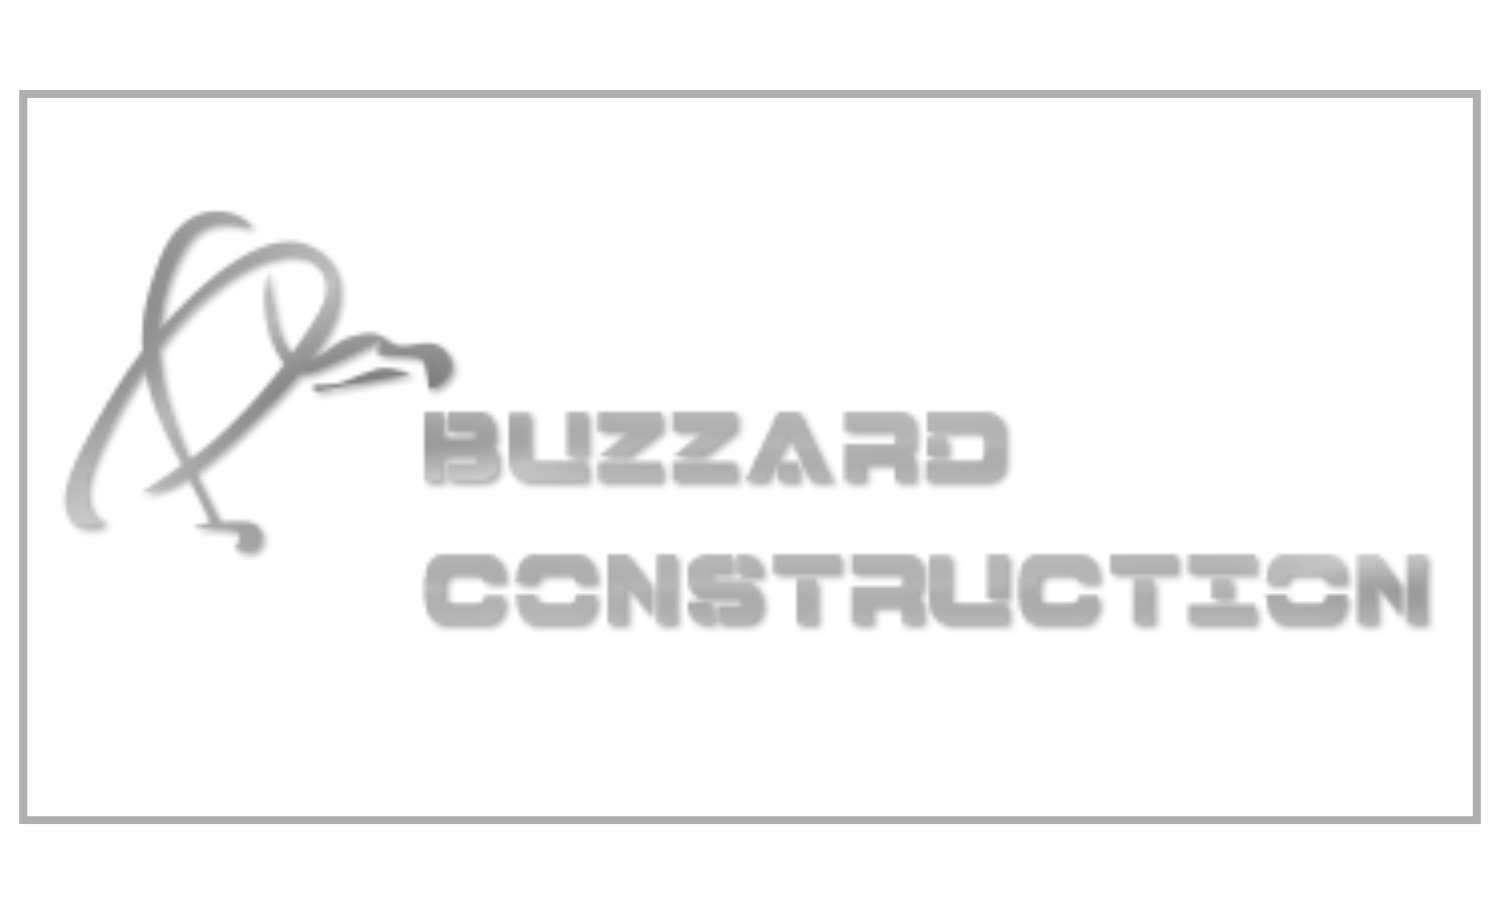 Buzzard Construction